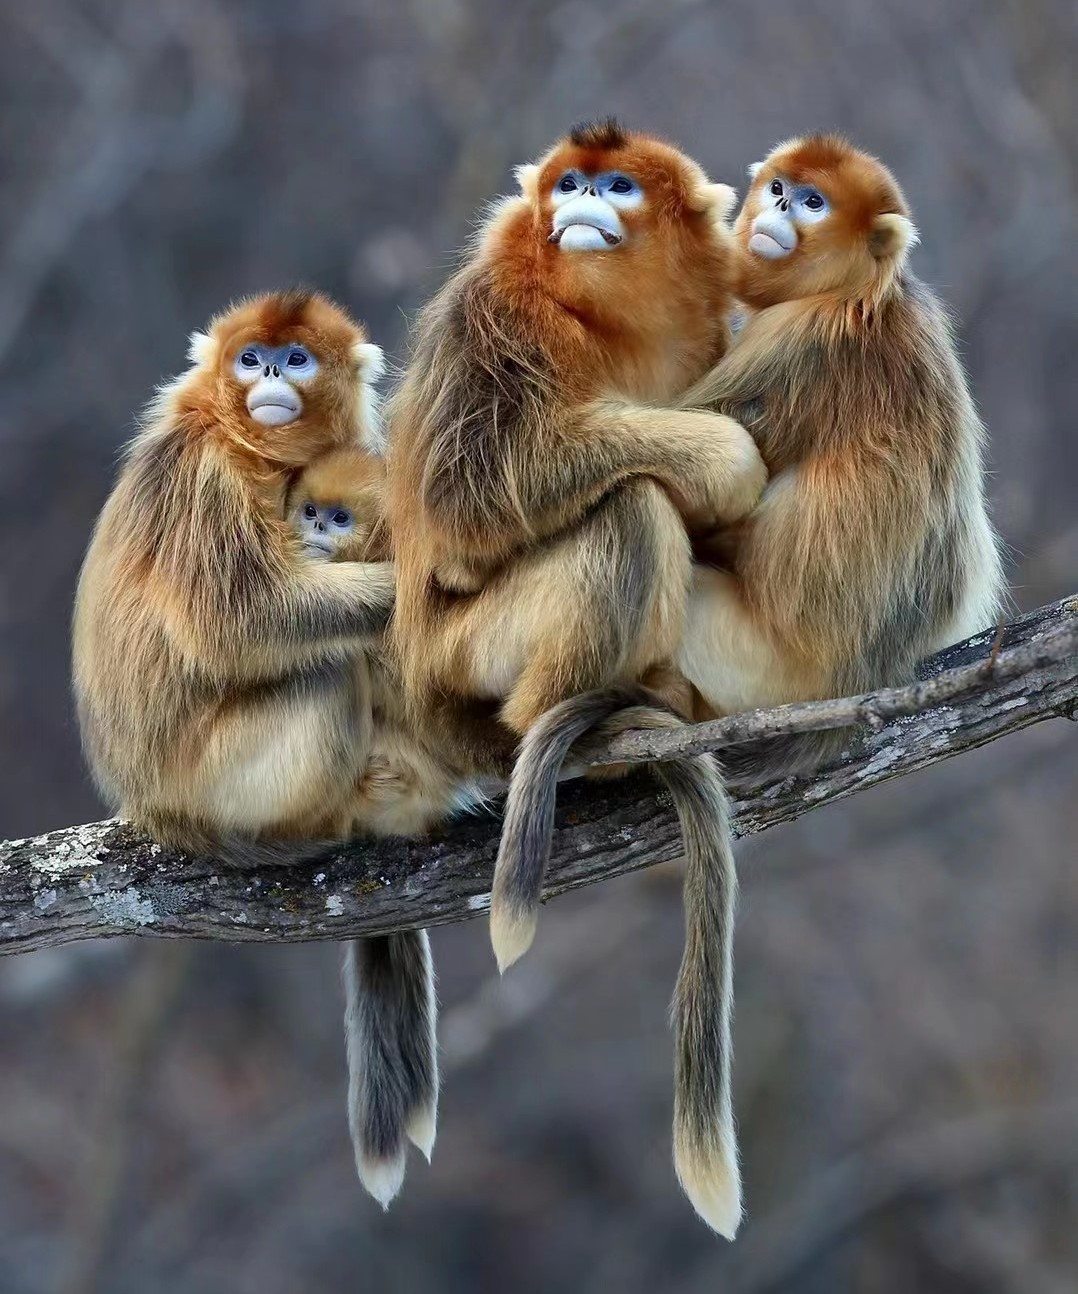 A group of Golden snub nose monkeys (Rhinopithecus roxellana)
Credit: Guanlai Ouyang